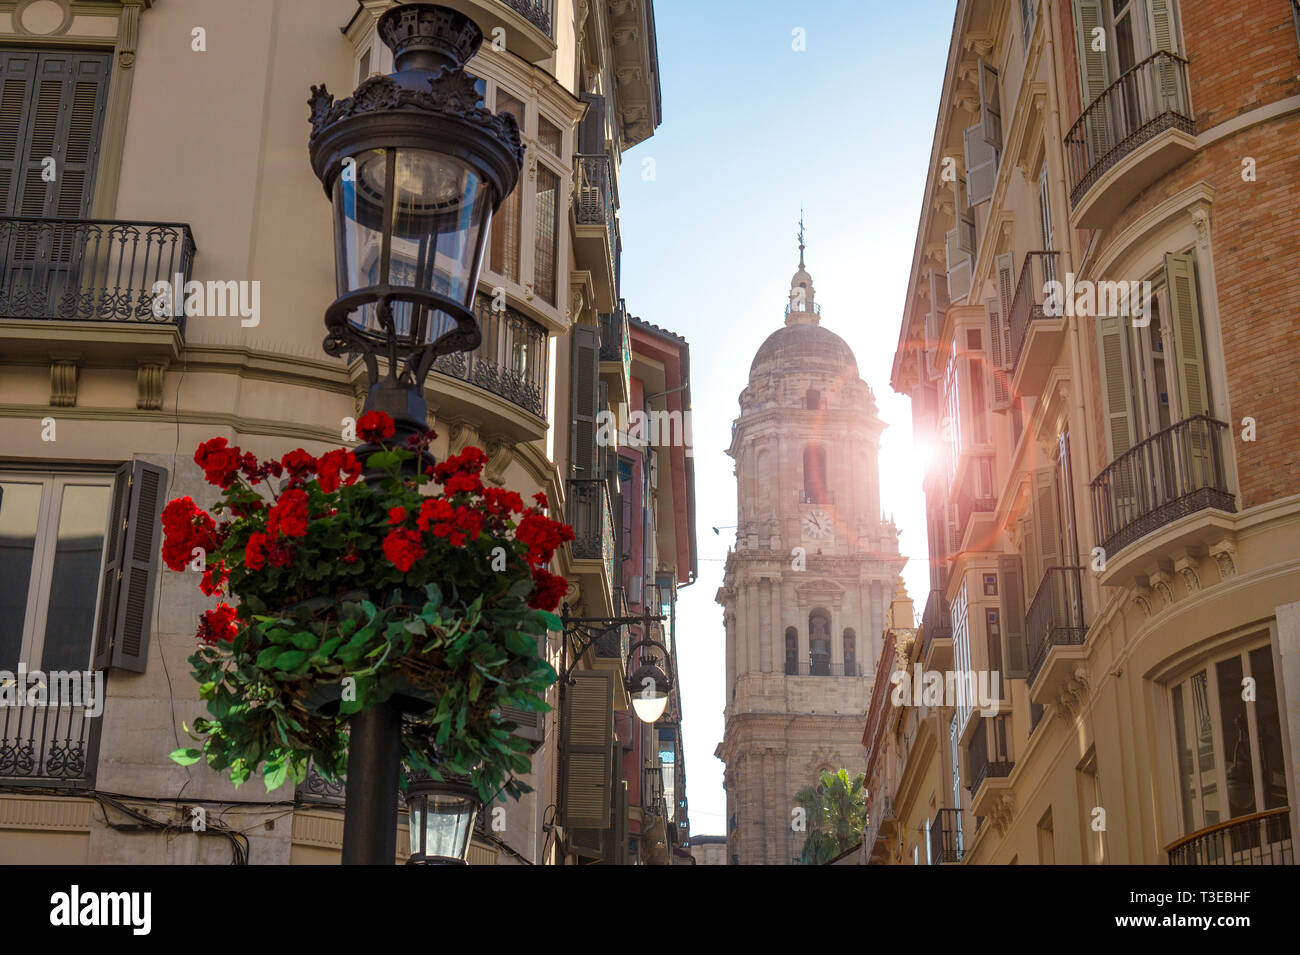 El campanario de la Catedral de la Encarnación al final de una estrecha calle Old Town en Málaga, España, con sol y una flor de geranio Foto de stock